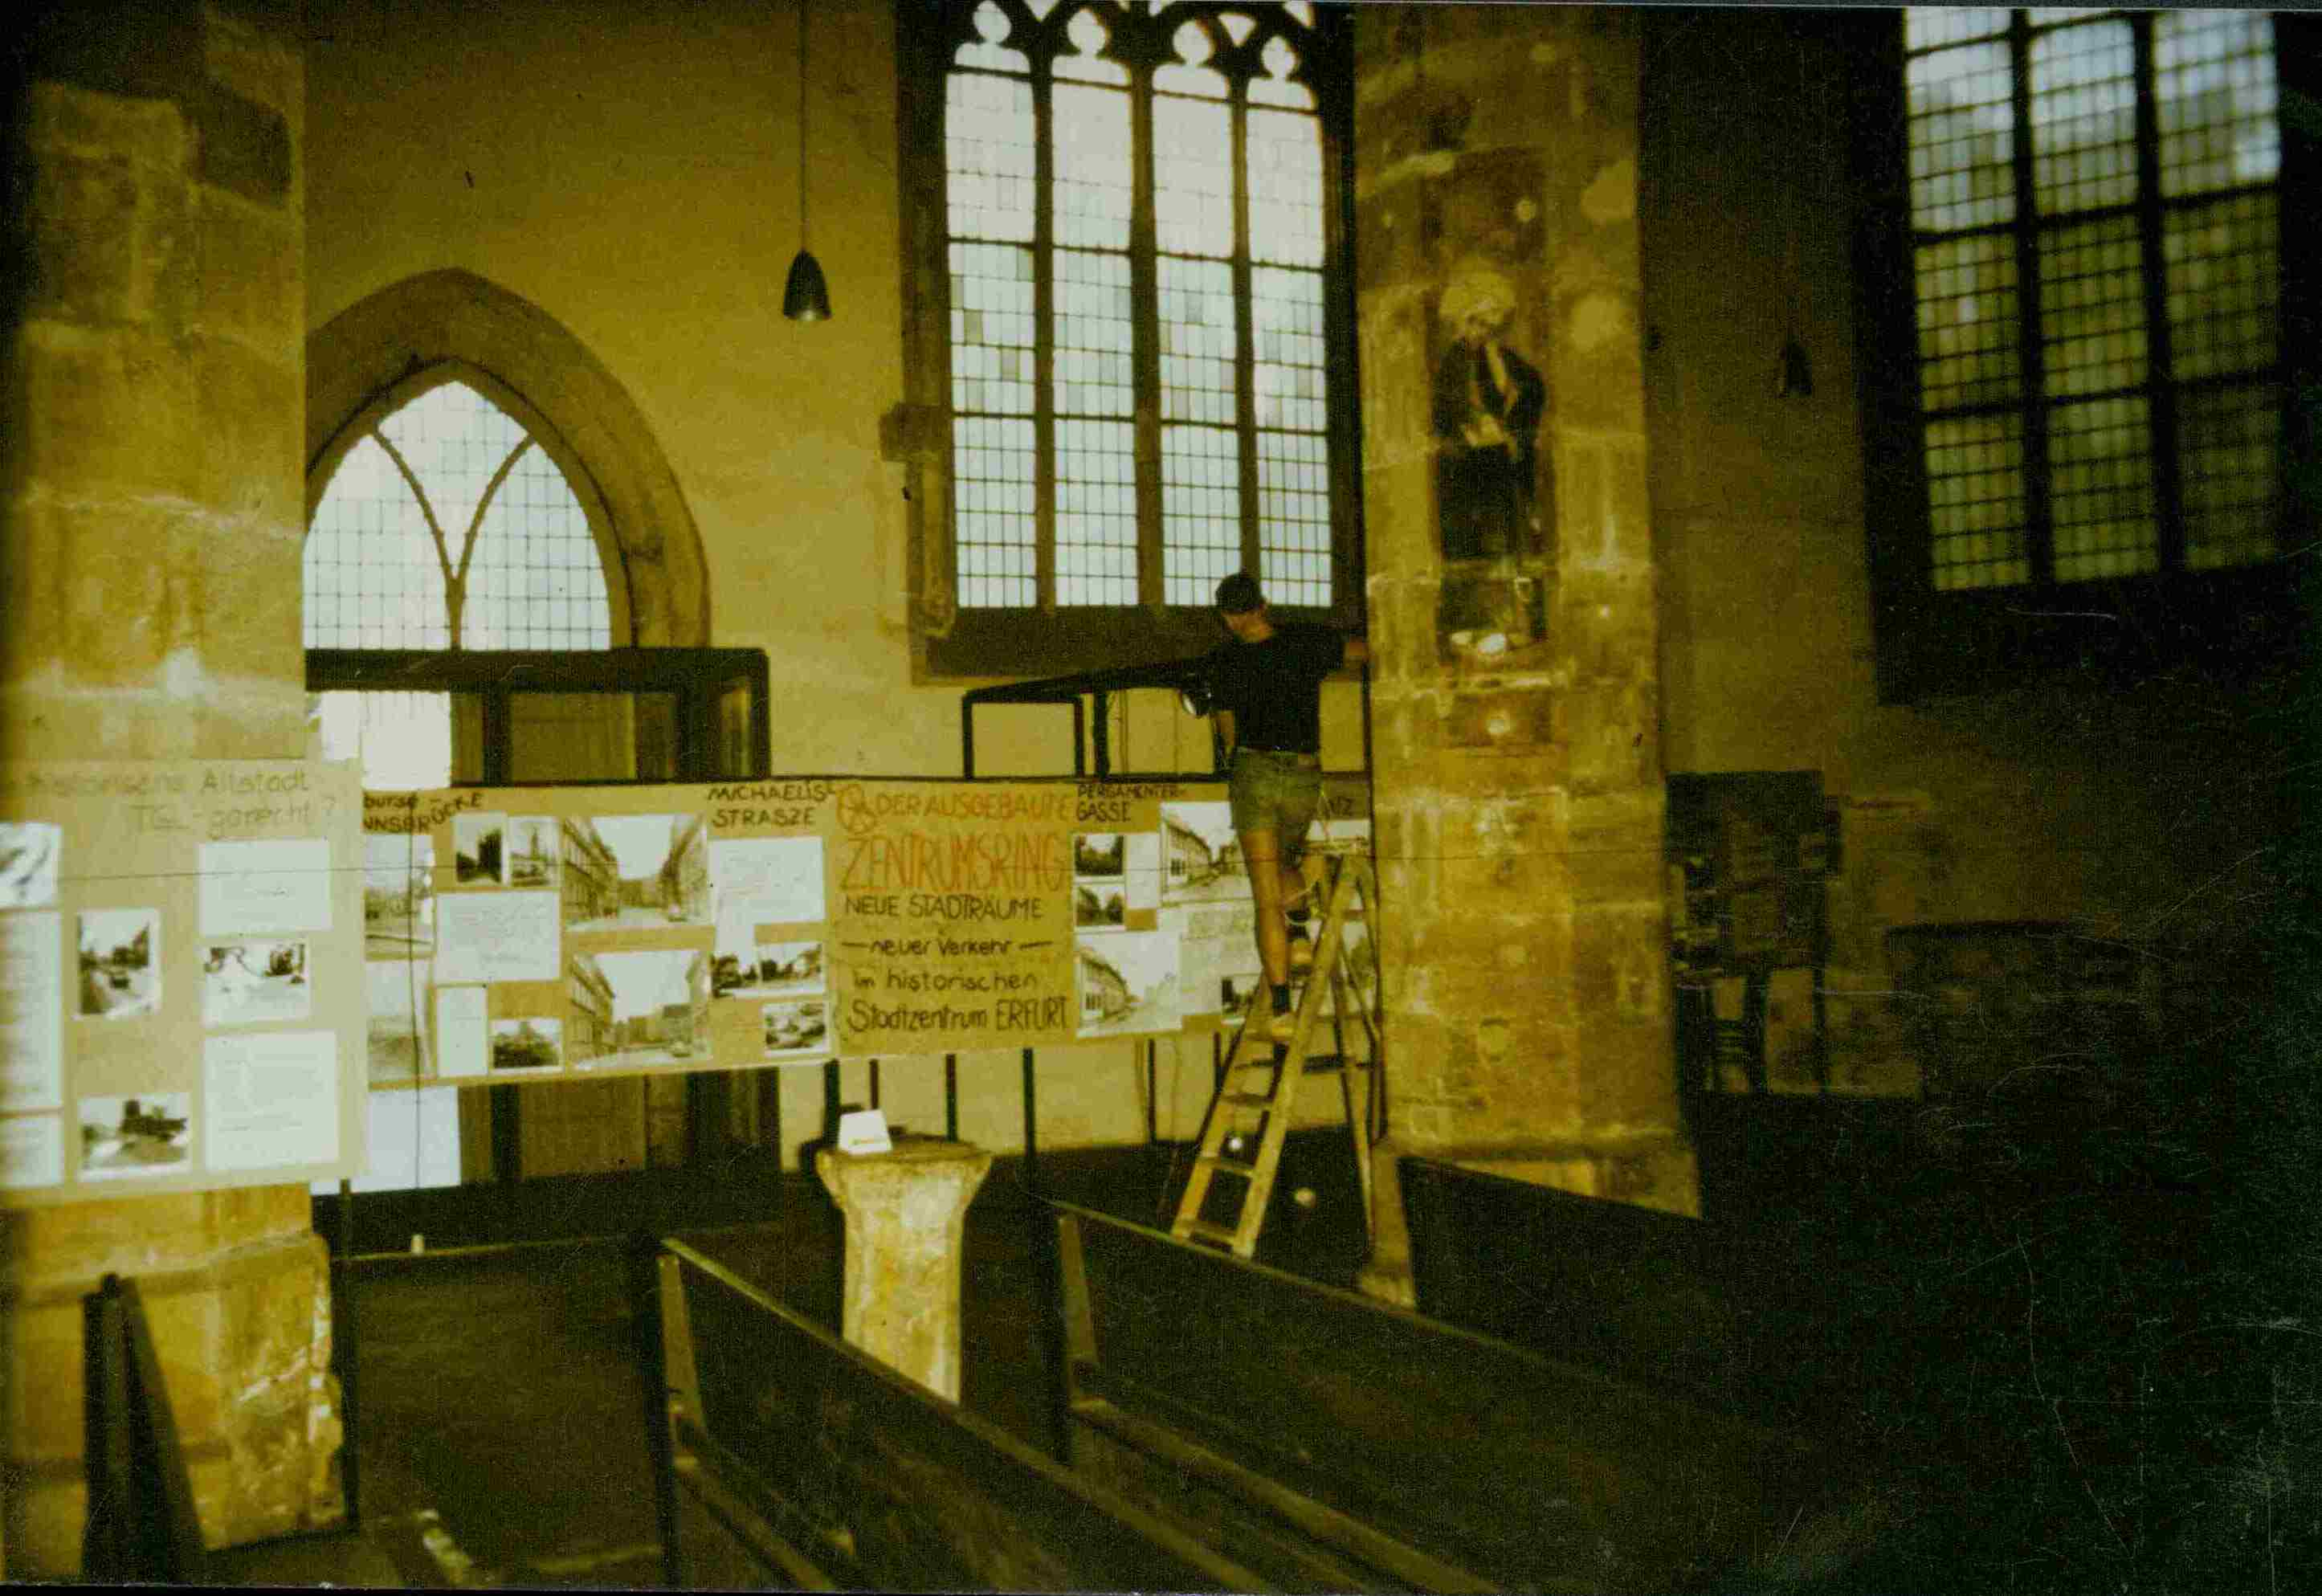 Innenraumaufnahme einer Kirche, in der eine Ausstellung aufgebaut wird.